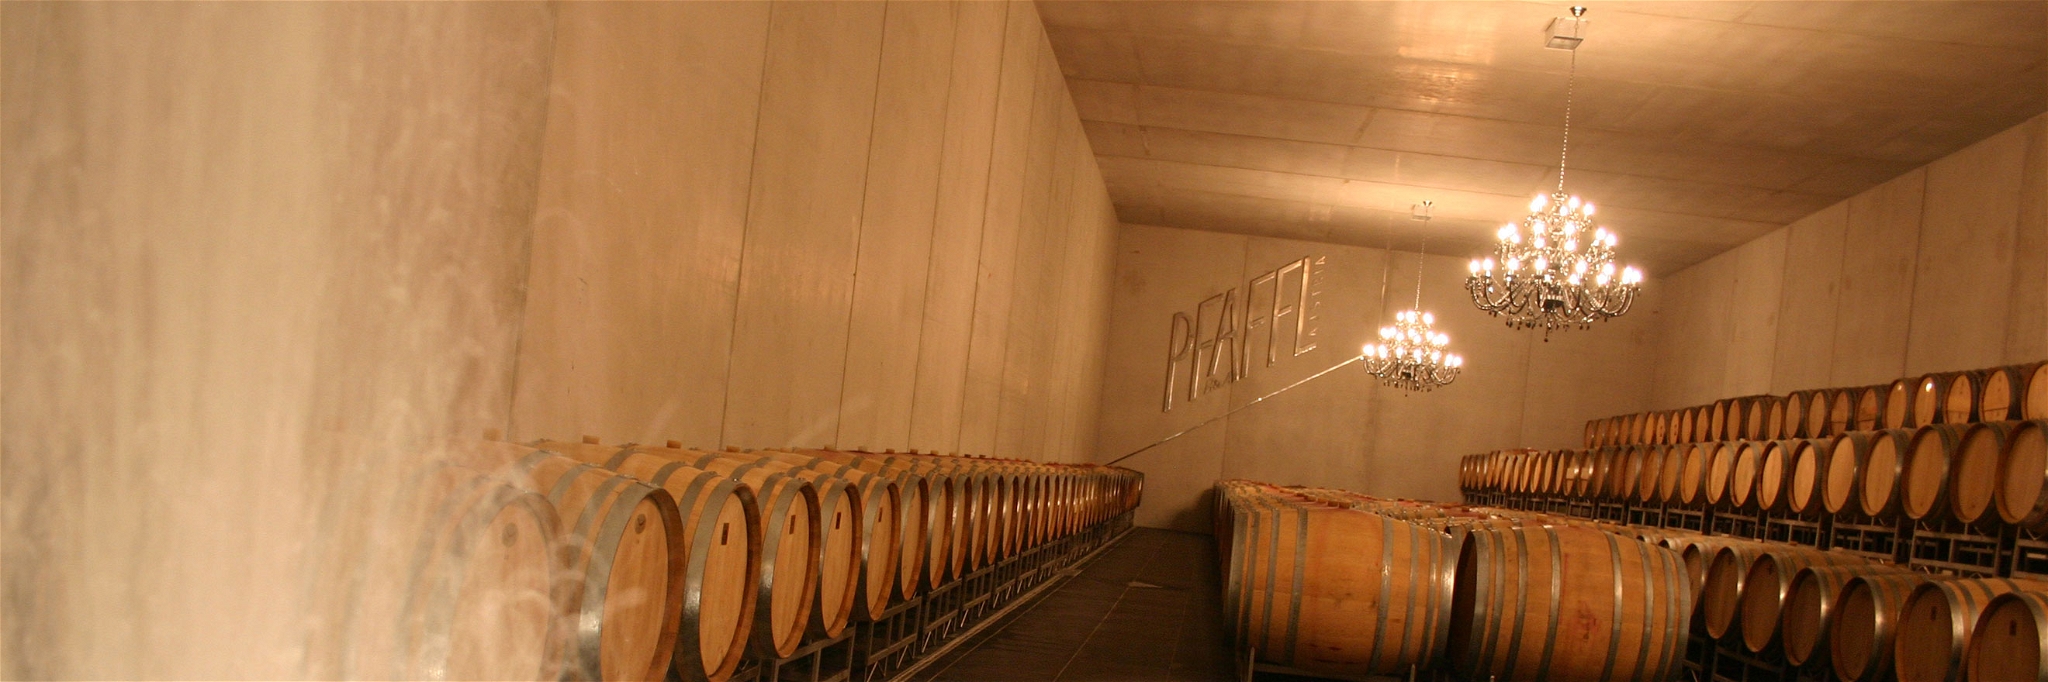 Das Weingut Pfaffl holt den »Wine Star Award« nach Österreich.